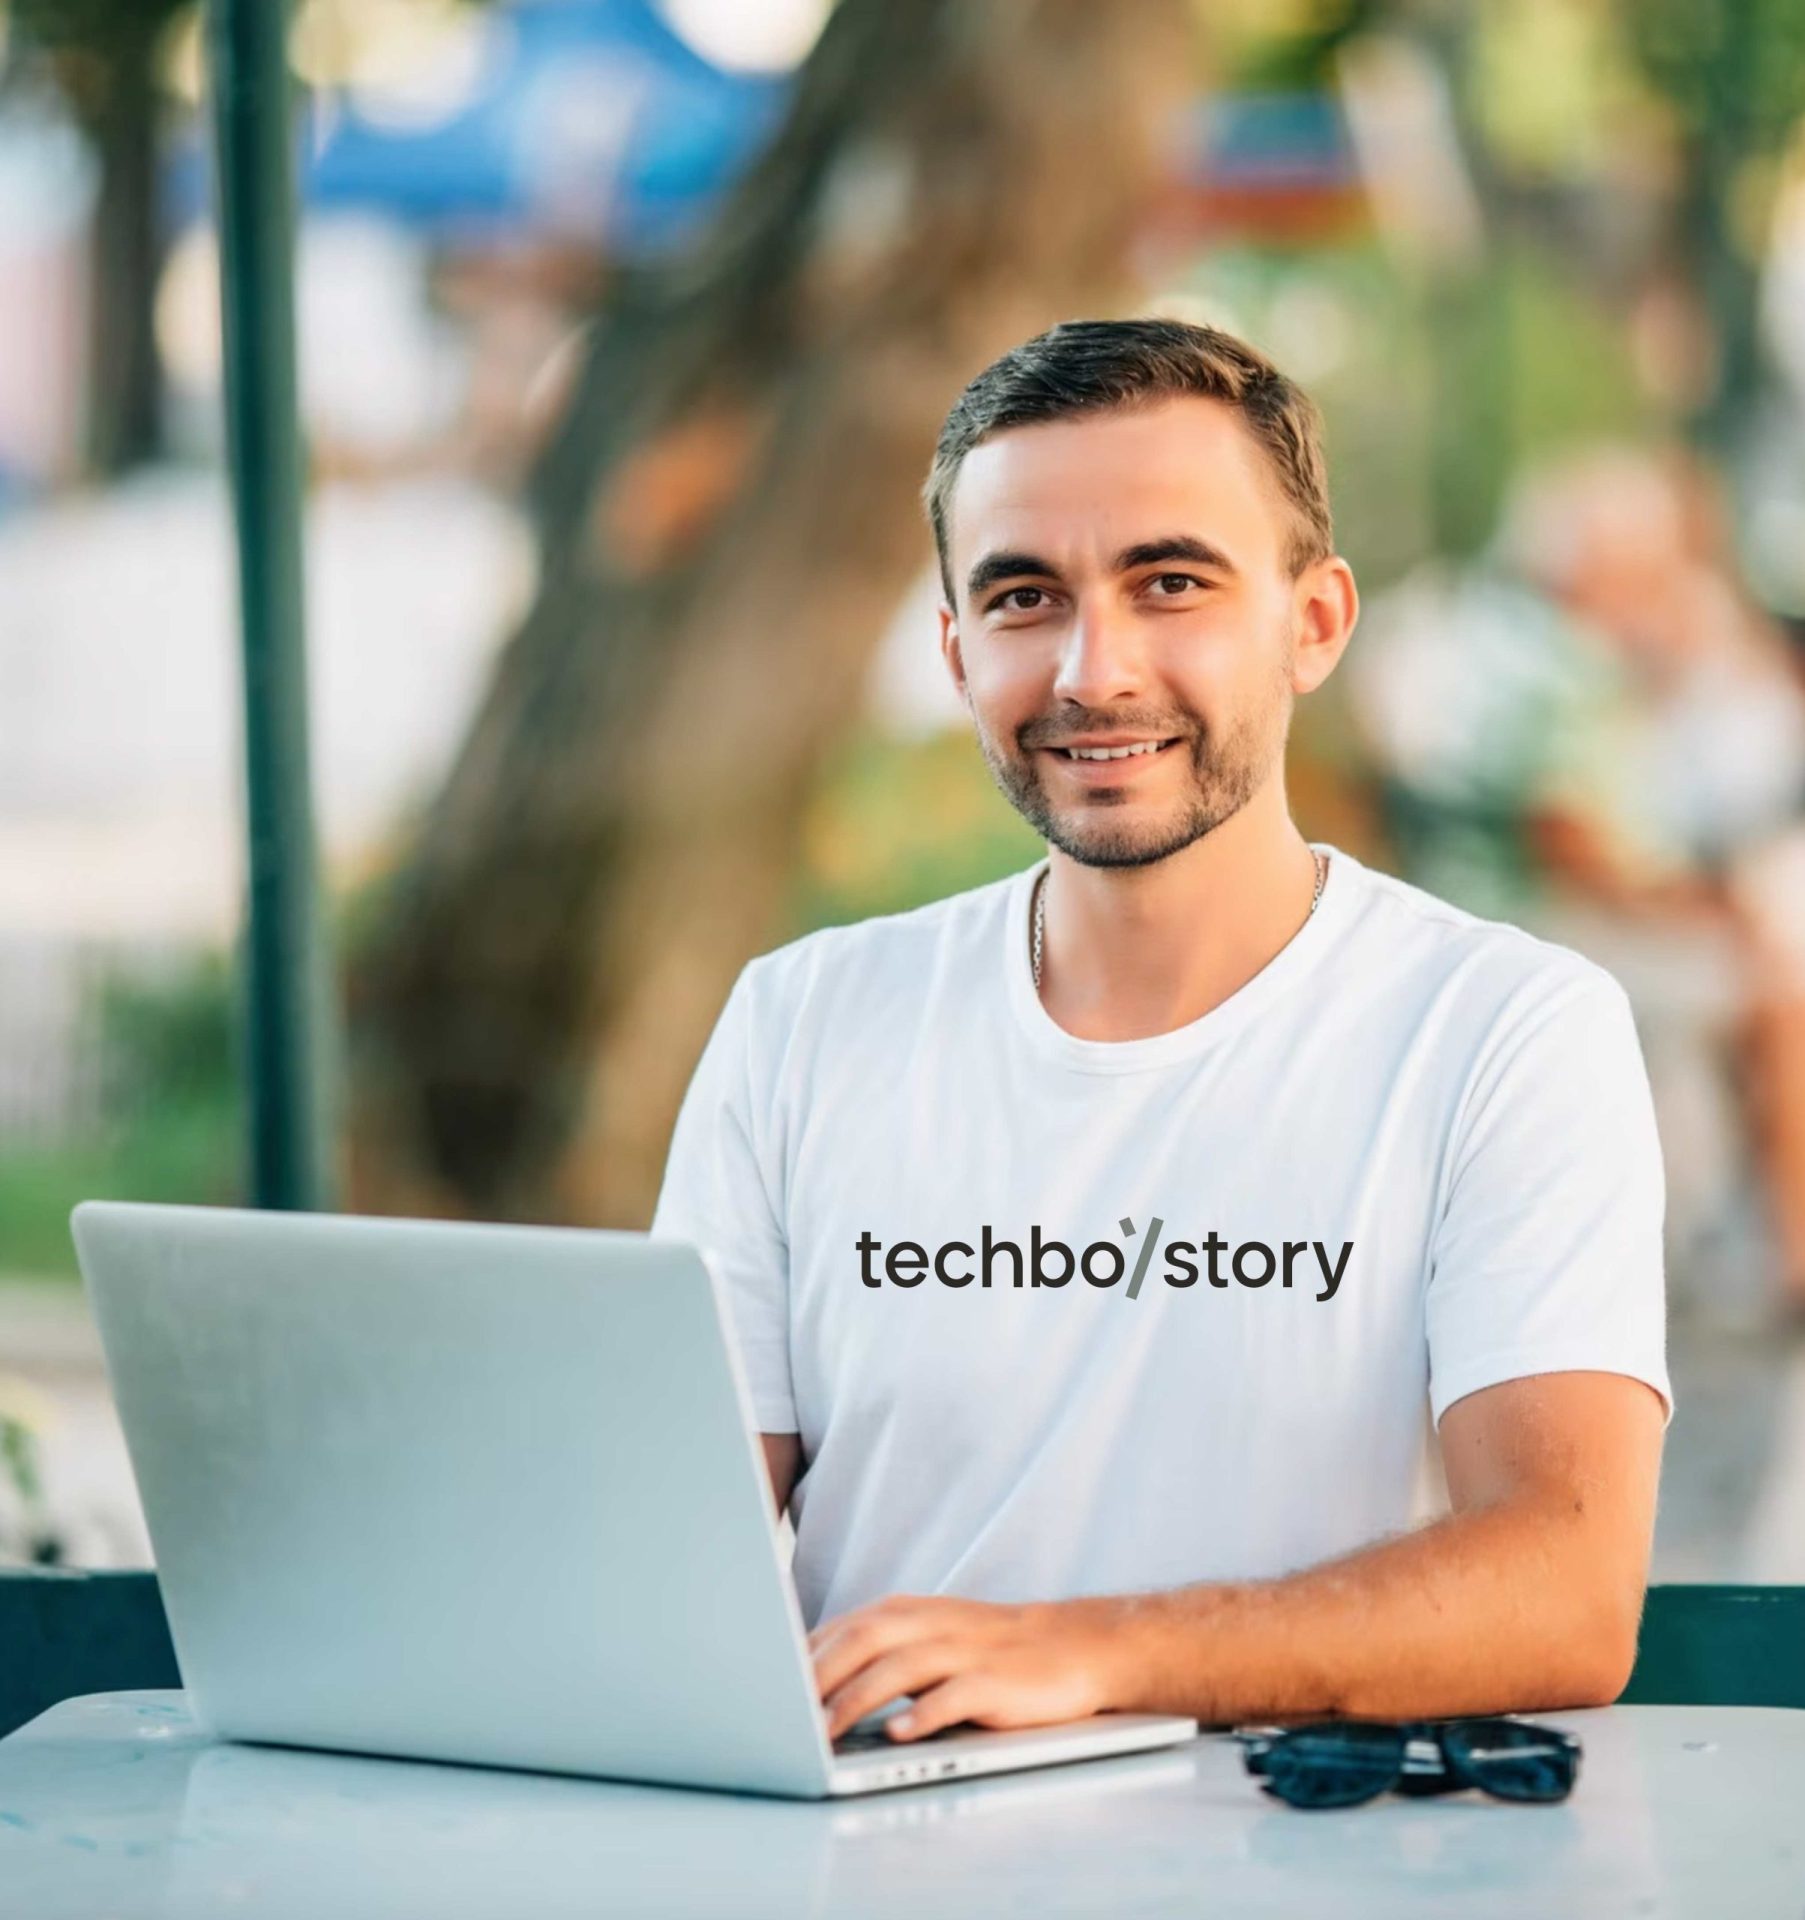 tricou tech boy story programatori software developer freelancer coding